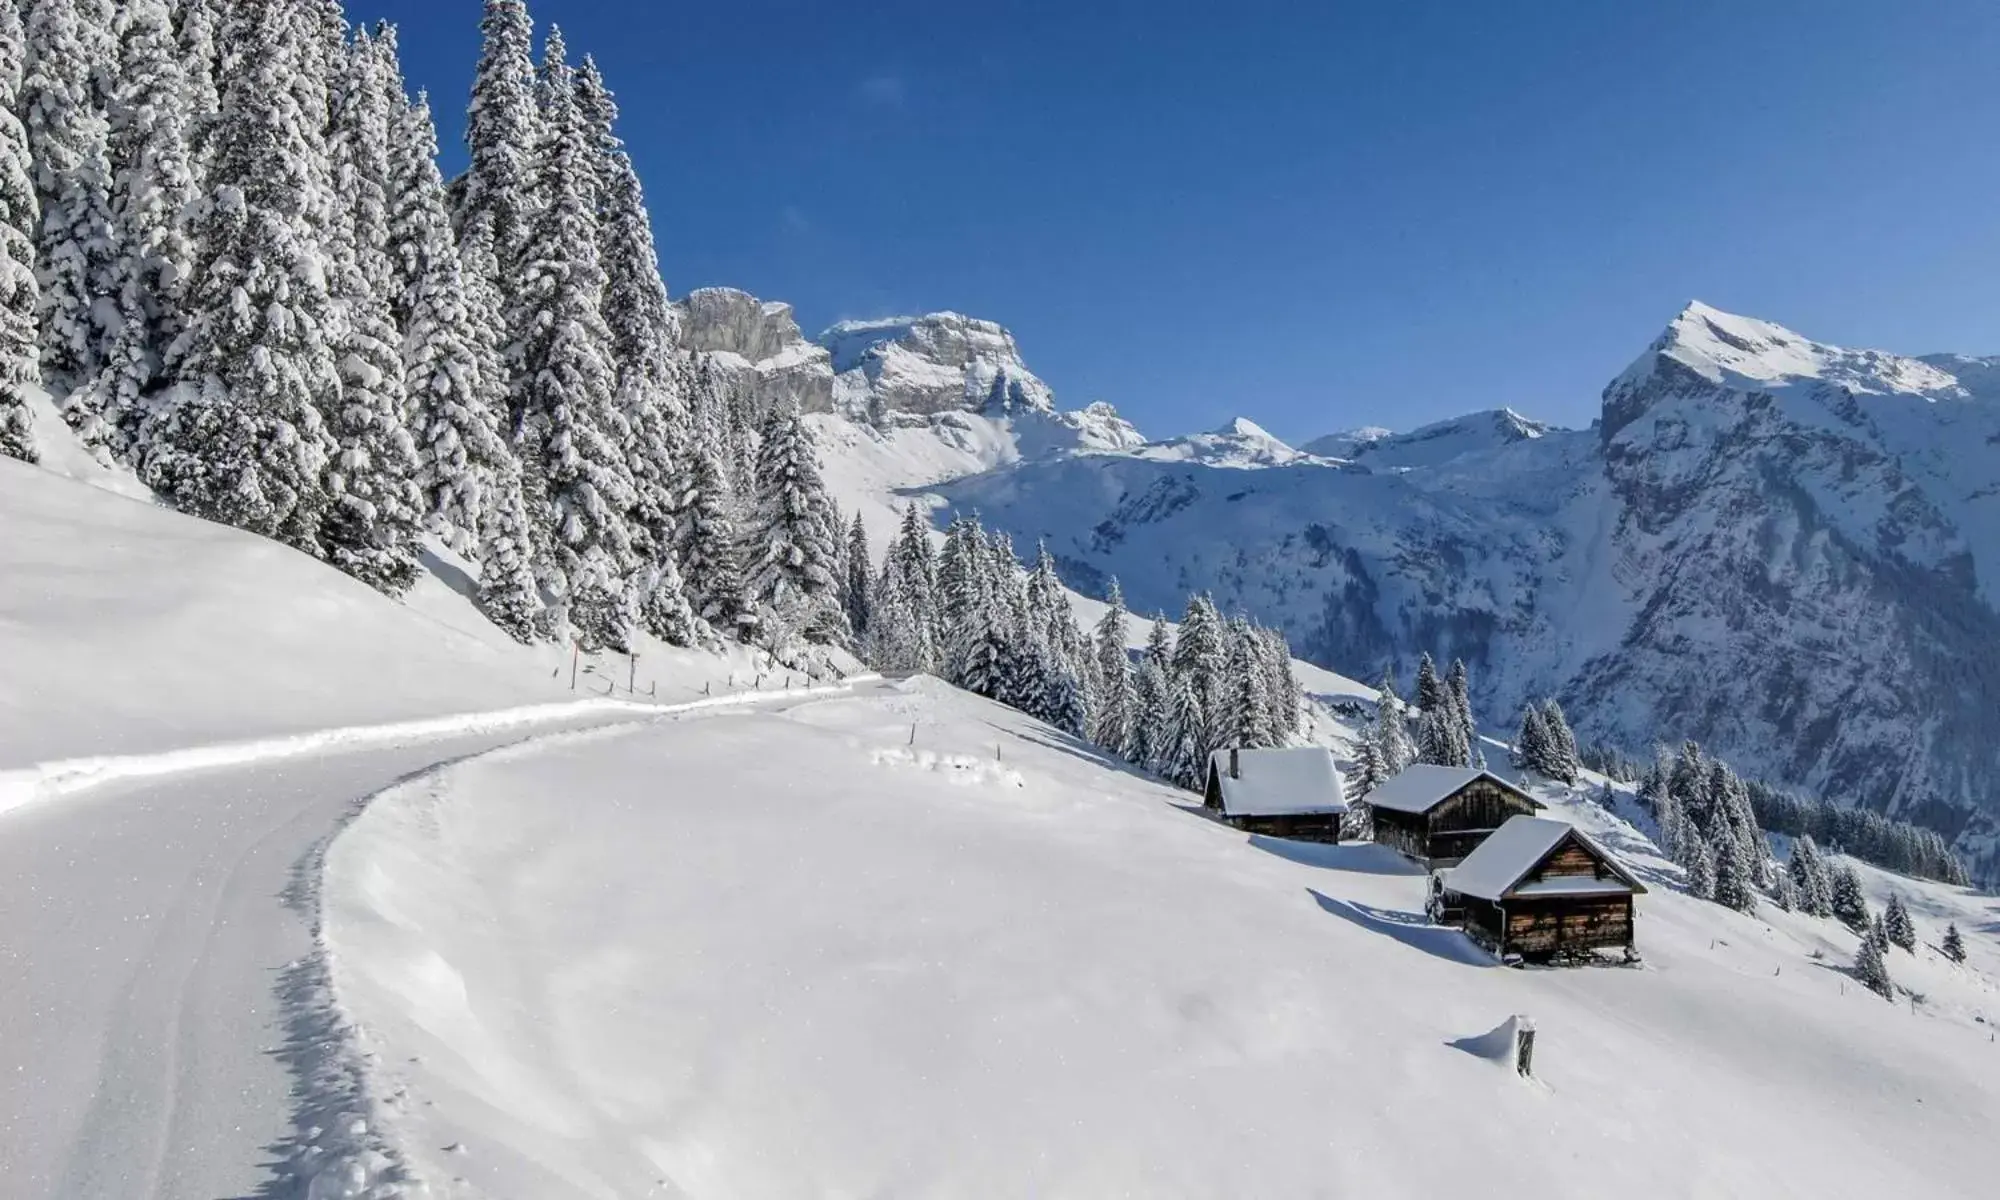 Nearby landmark, Winter in Alpenclub